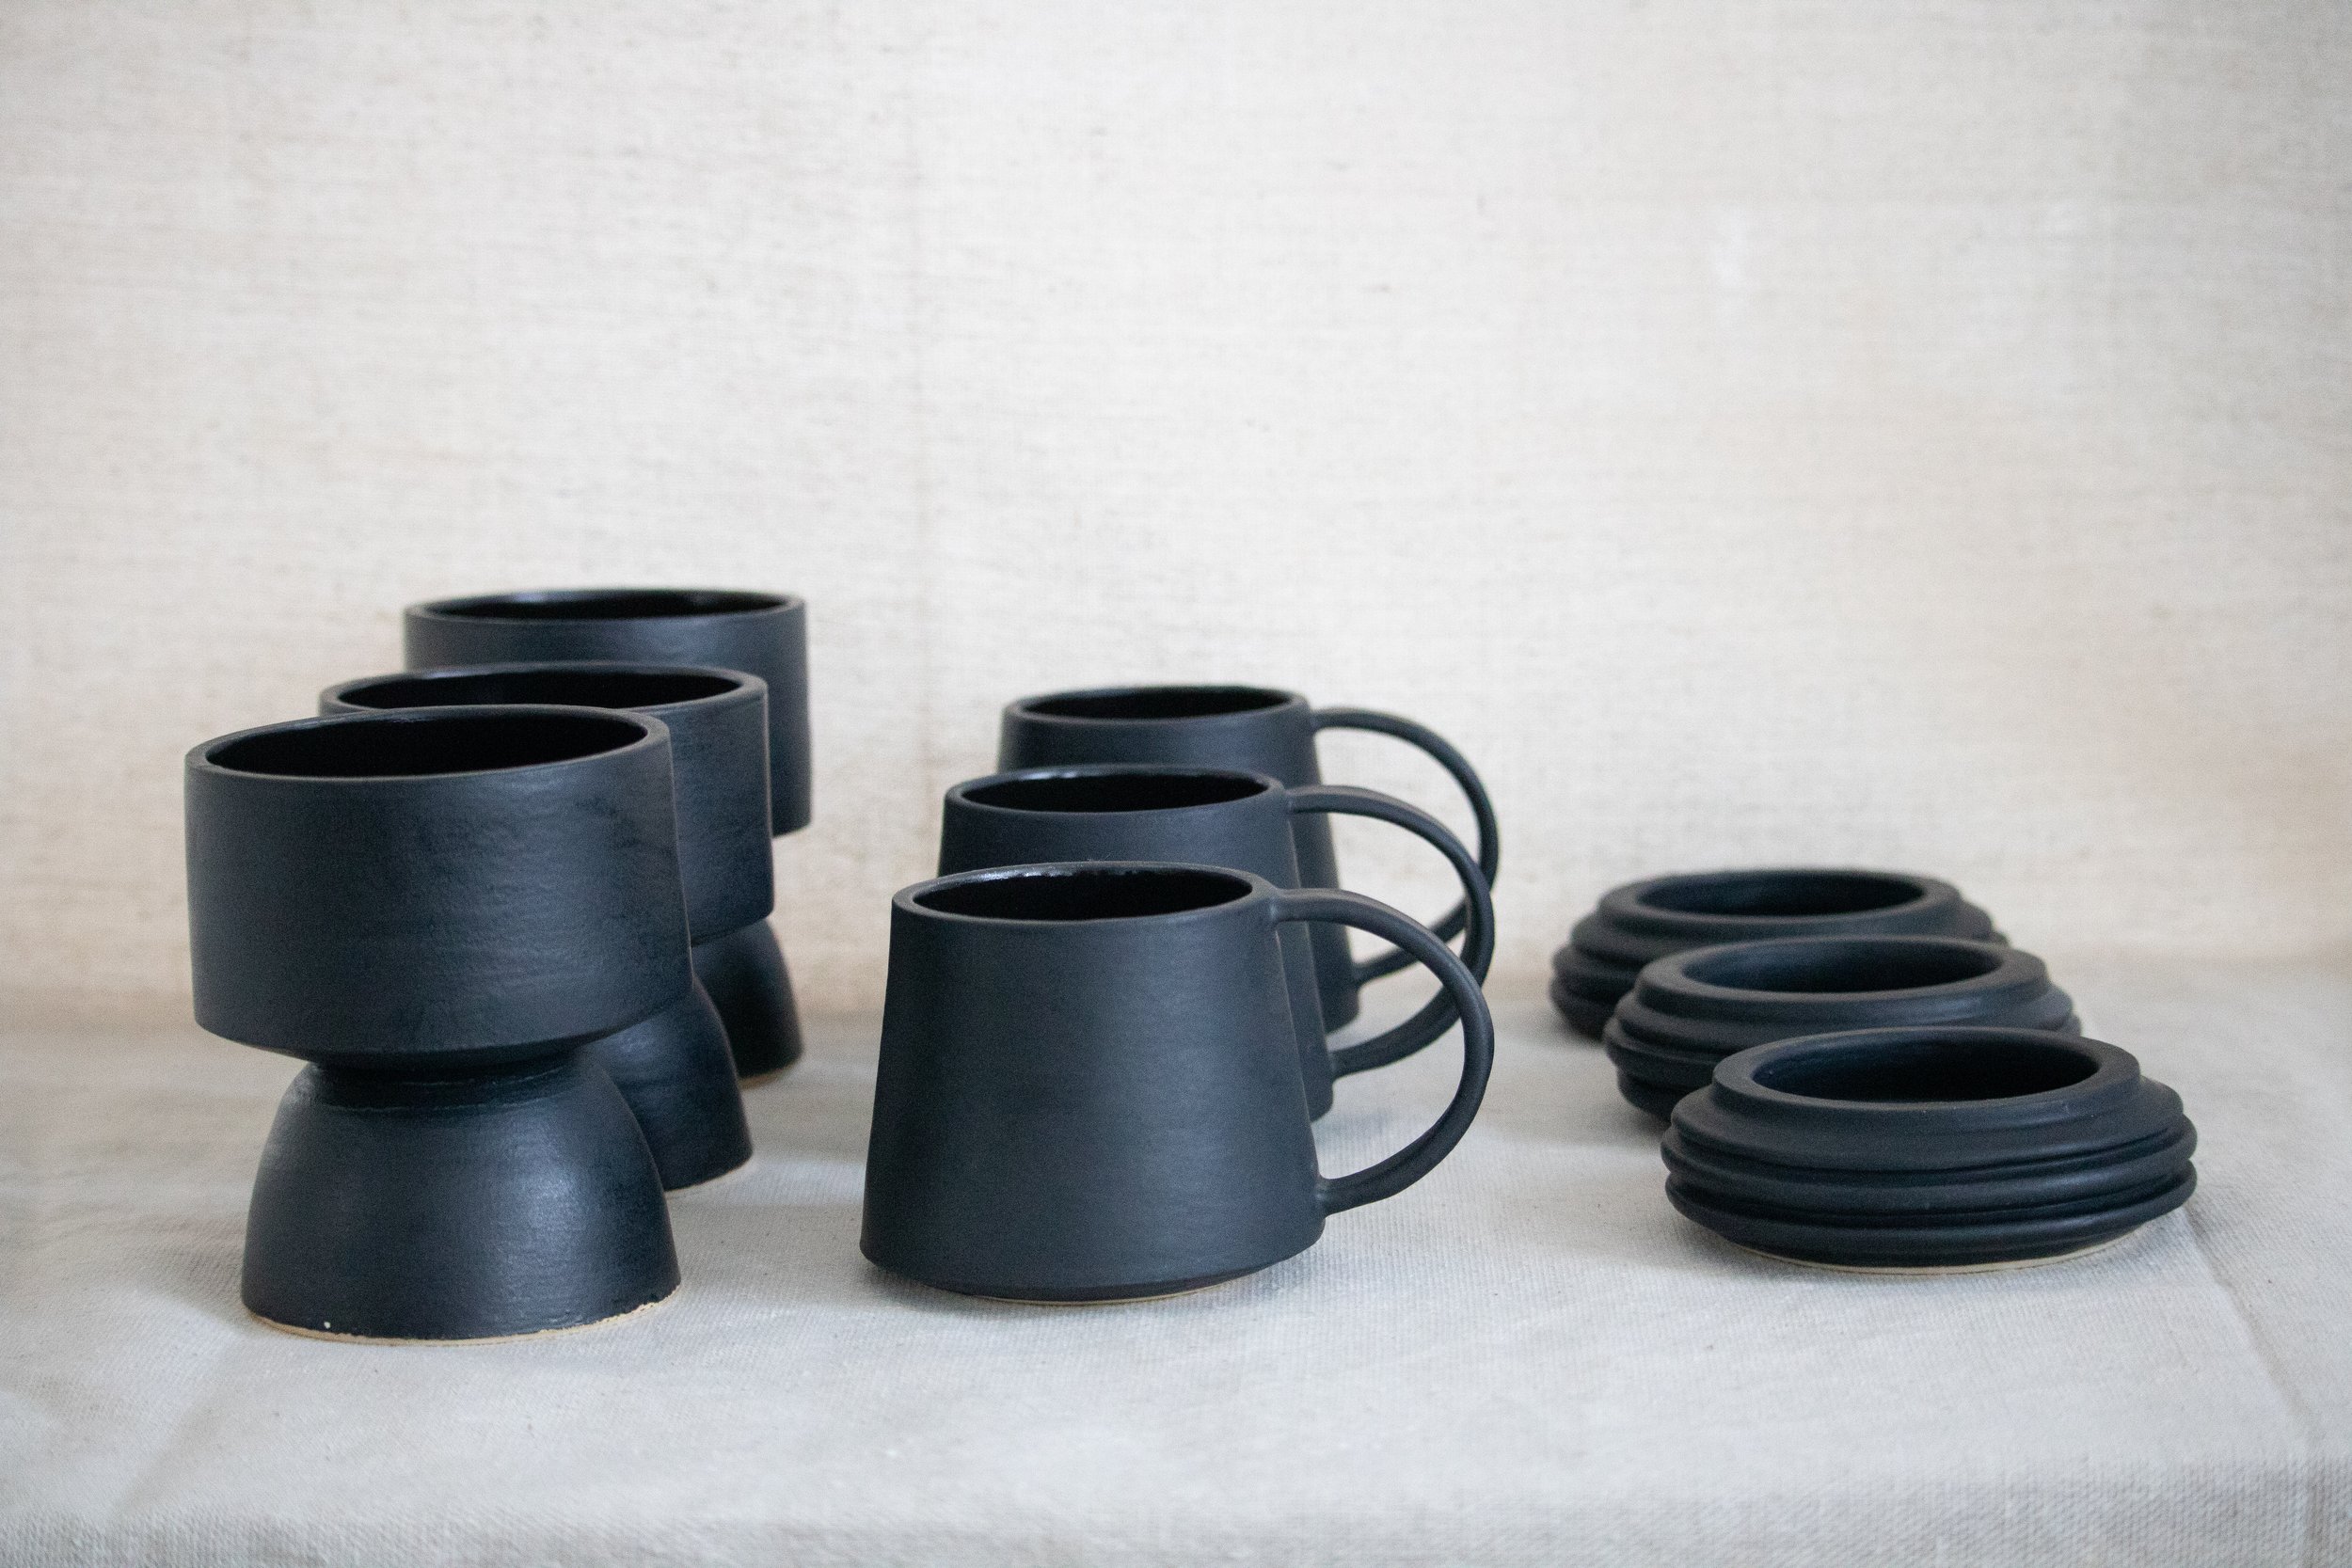 All black ceramic designs by Grey Remedy